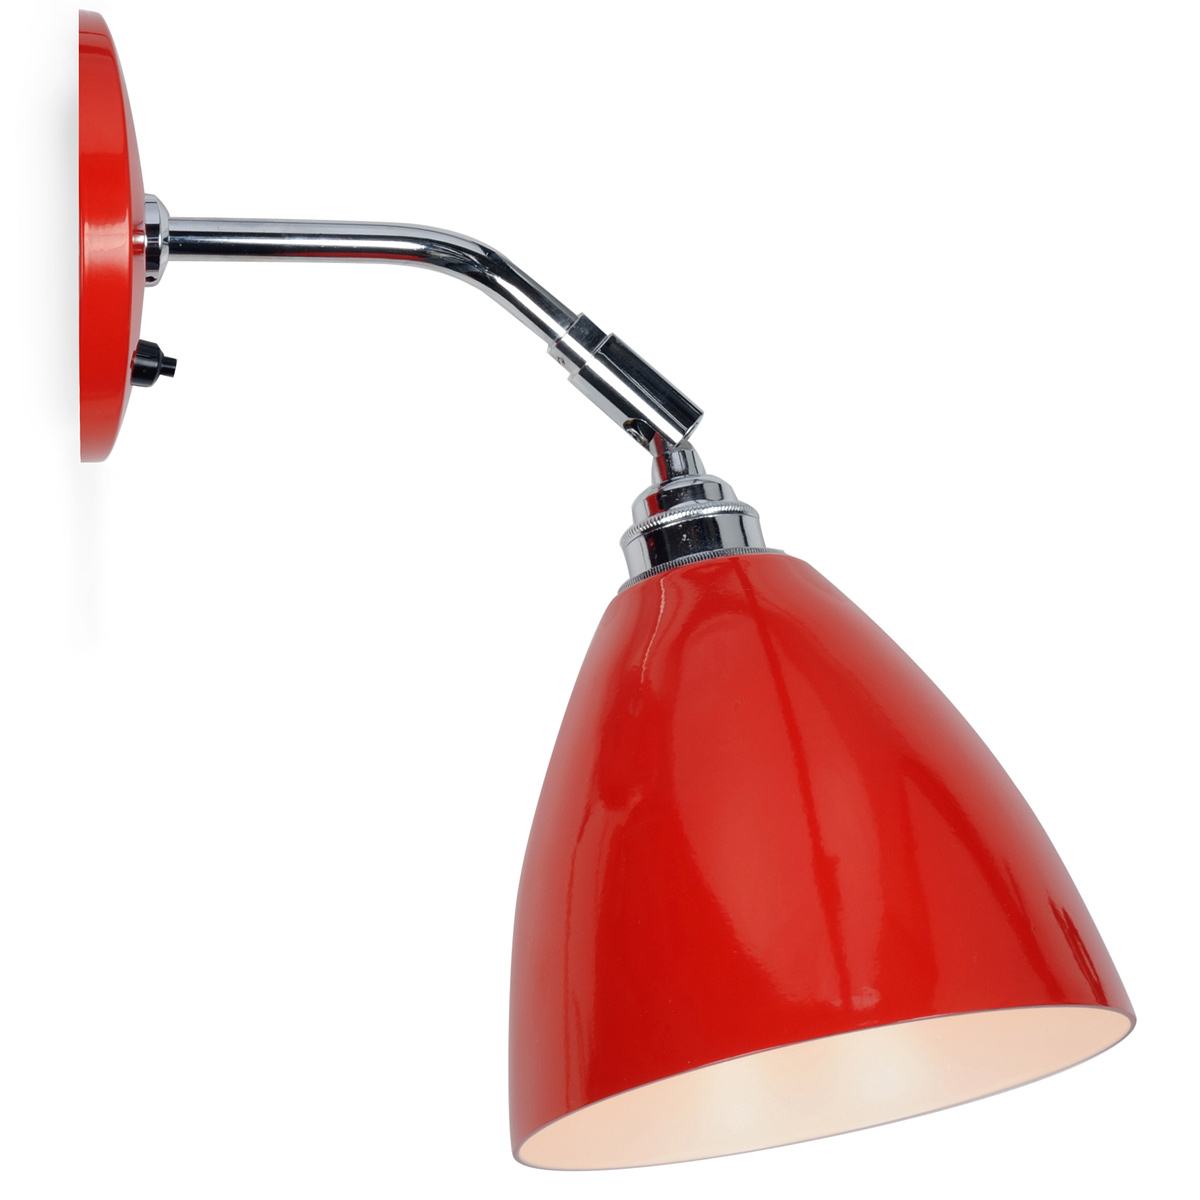 Einstellbare, rote Gelenk-Wandlampe im Retro-Stil: Praktische Gelenk-Wandlampe, Schirm und Wandteil in Rot (RAL3020)